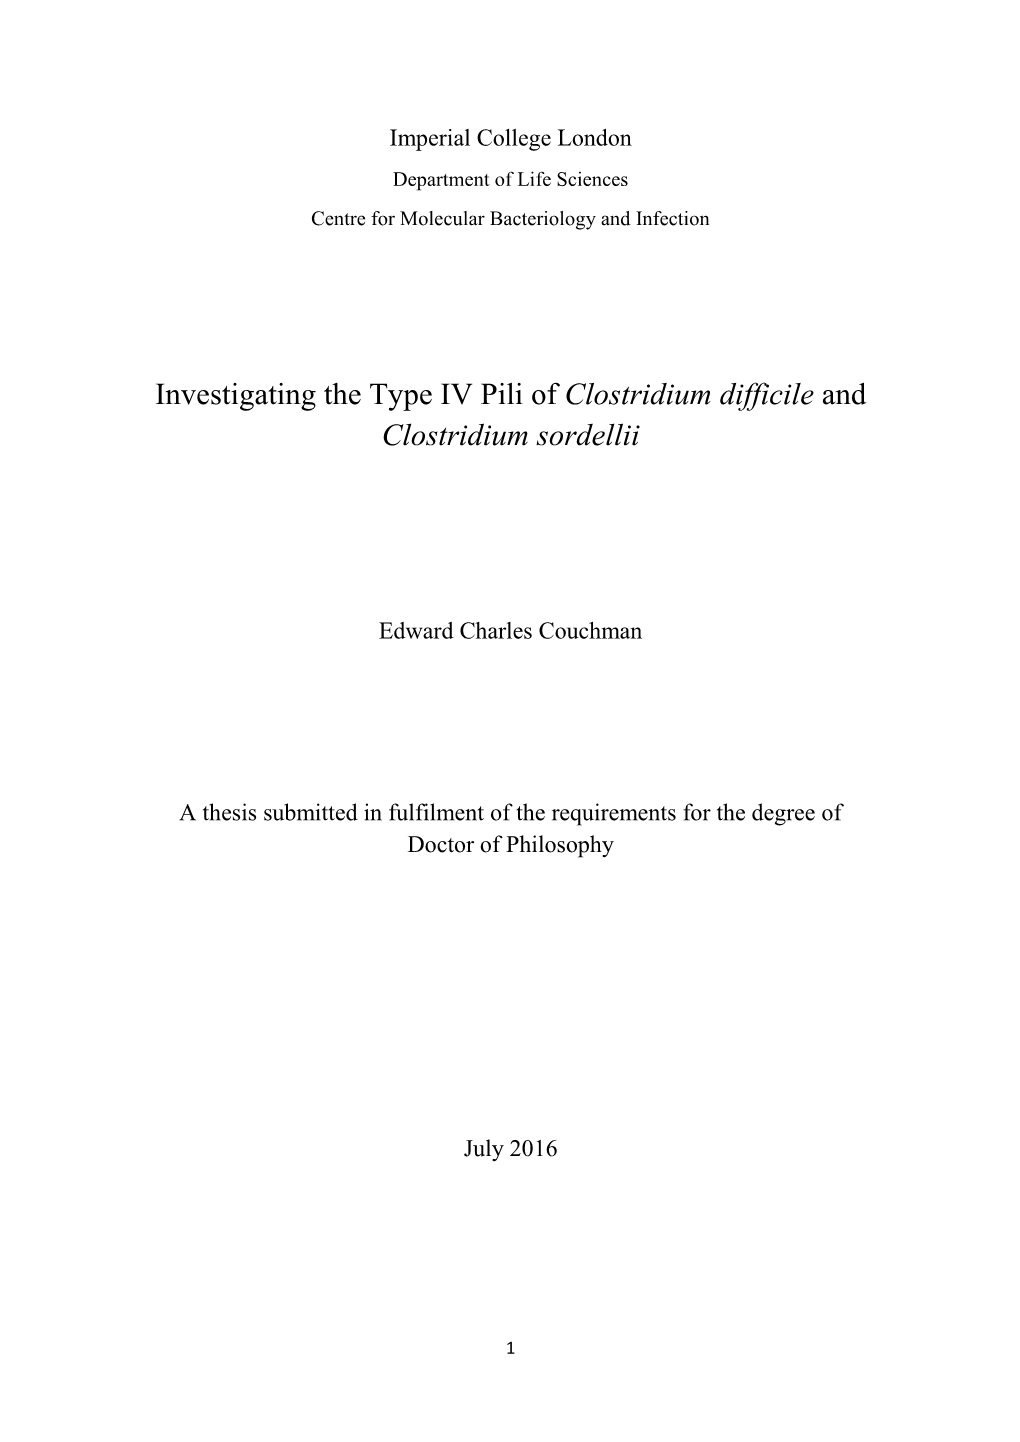 Investigating the Type IV Pili of Clostridium Difficile and Clostridium Sordellii